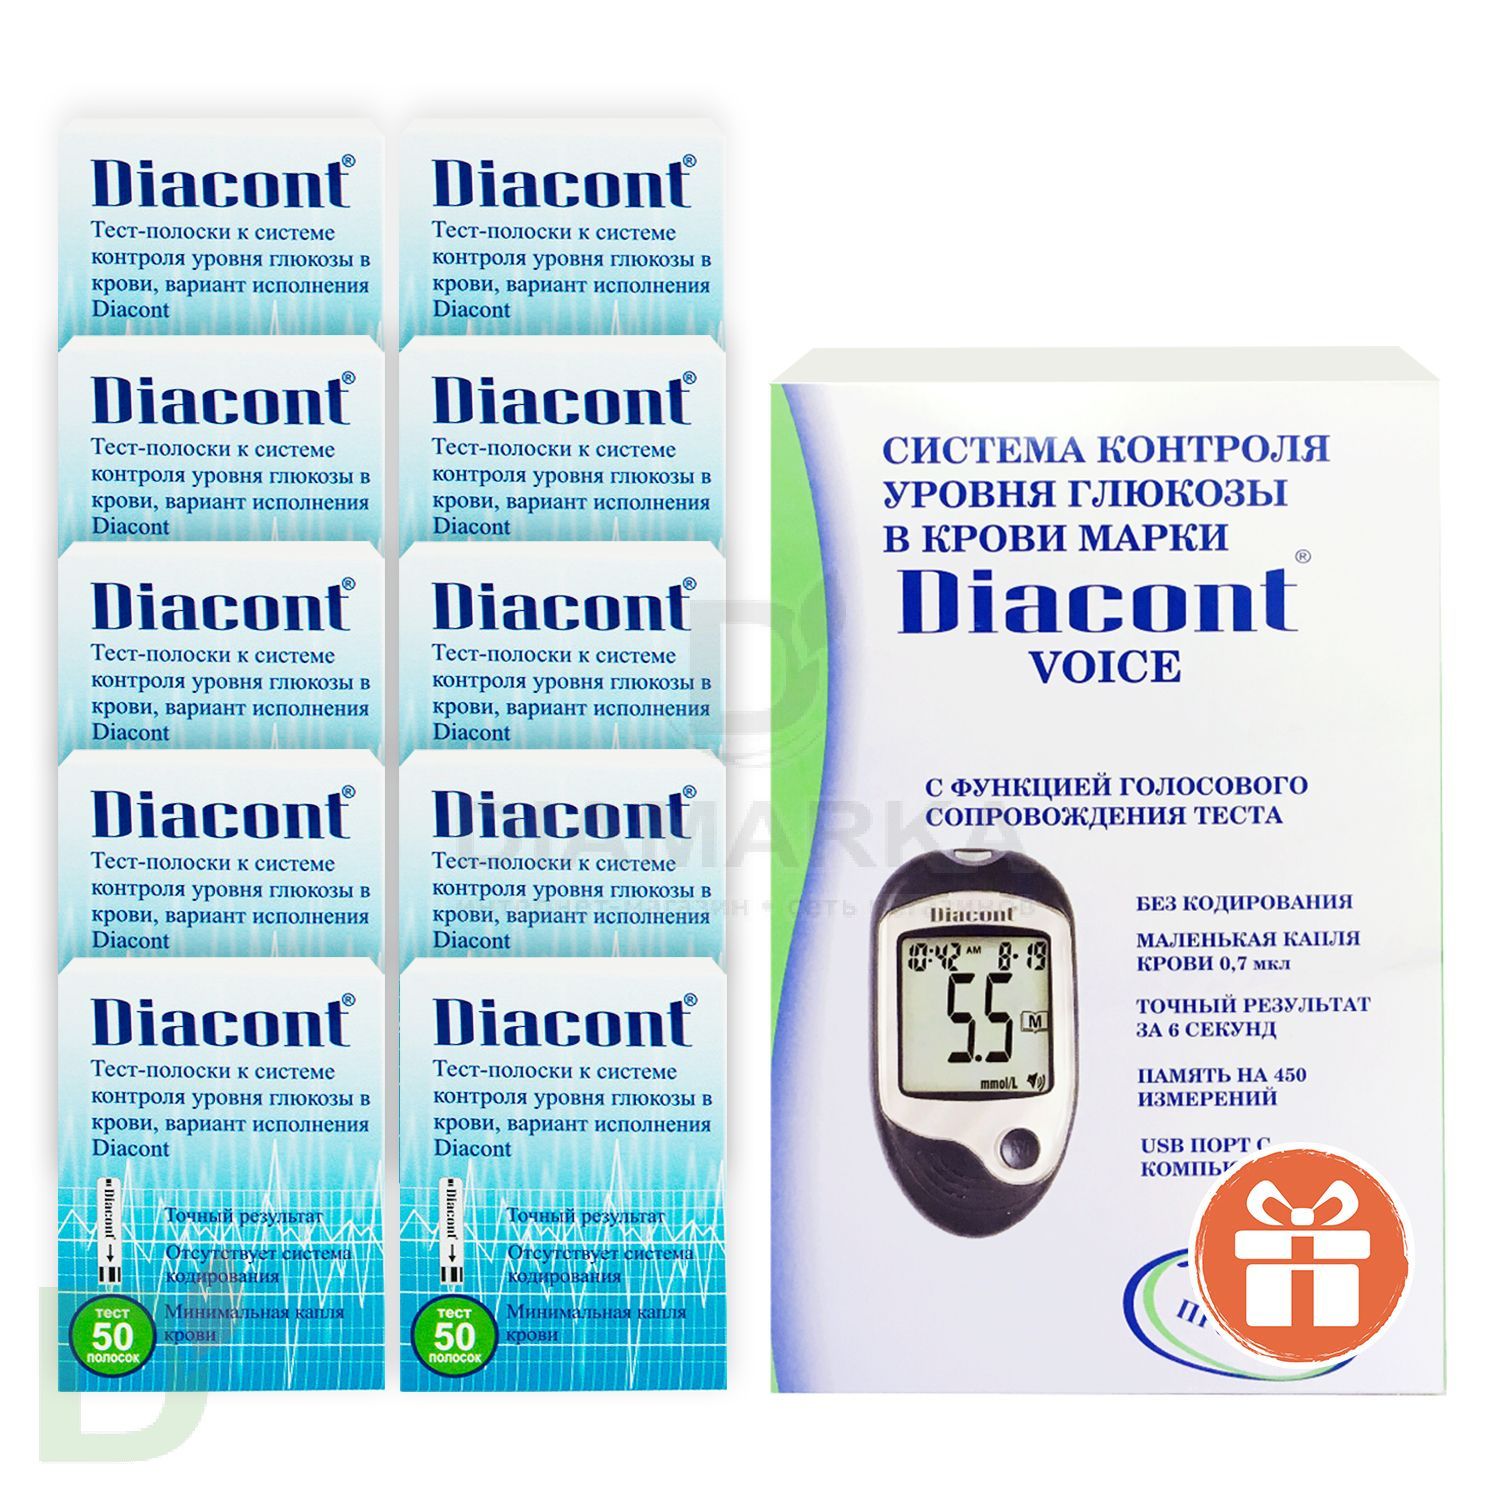 Глюкометр говорящий Диаконт Войс (Diacont Voice) + 10 пачек тест-полосок № 50